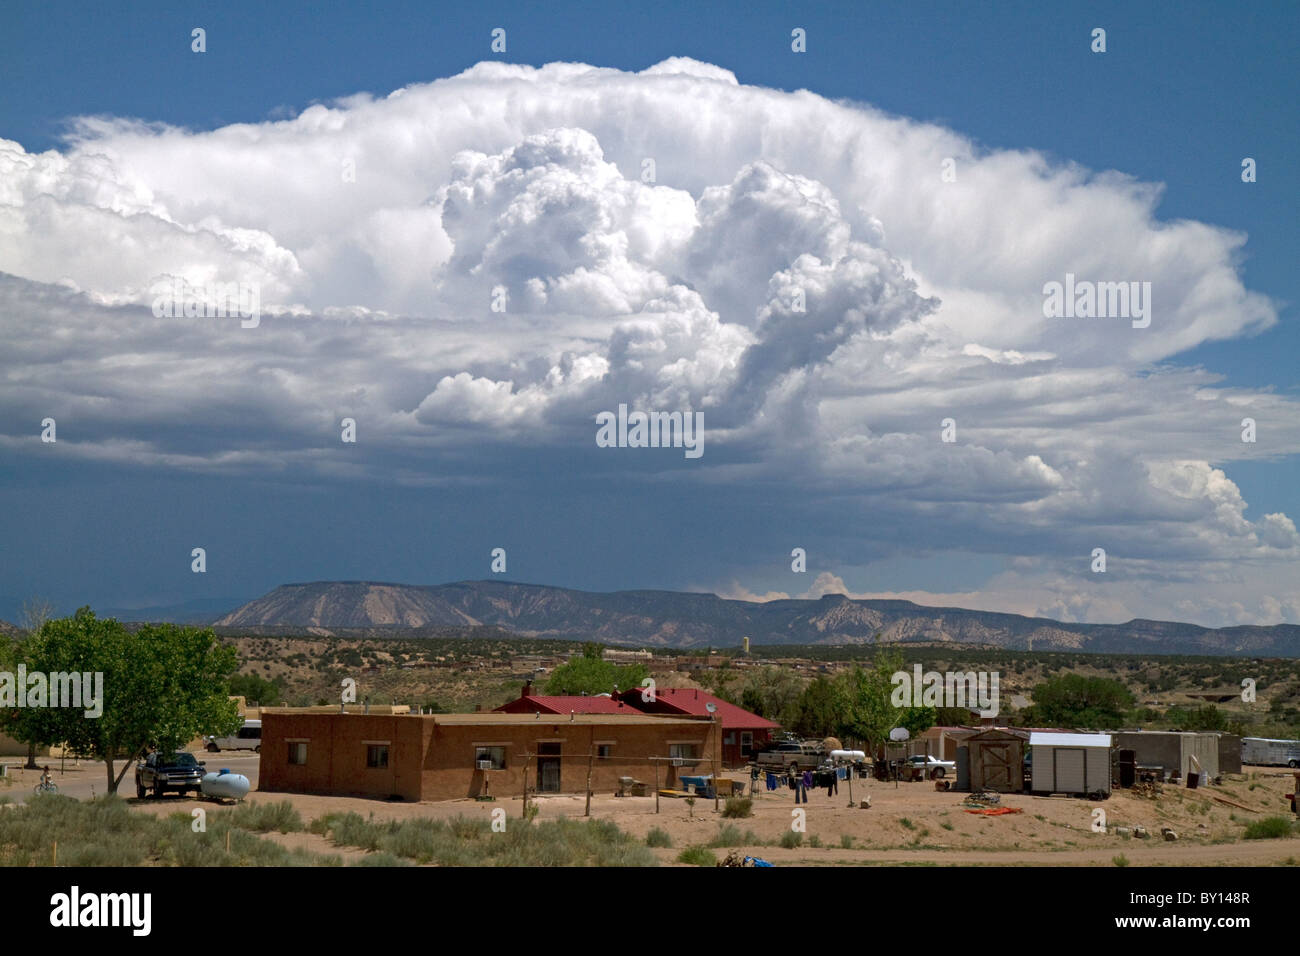 Stratocumulus-Wolken über der Wüste in der Nähe von Kuba, New Mexico, USA zu bauen. Stockfoto